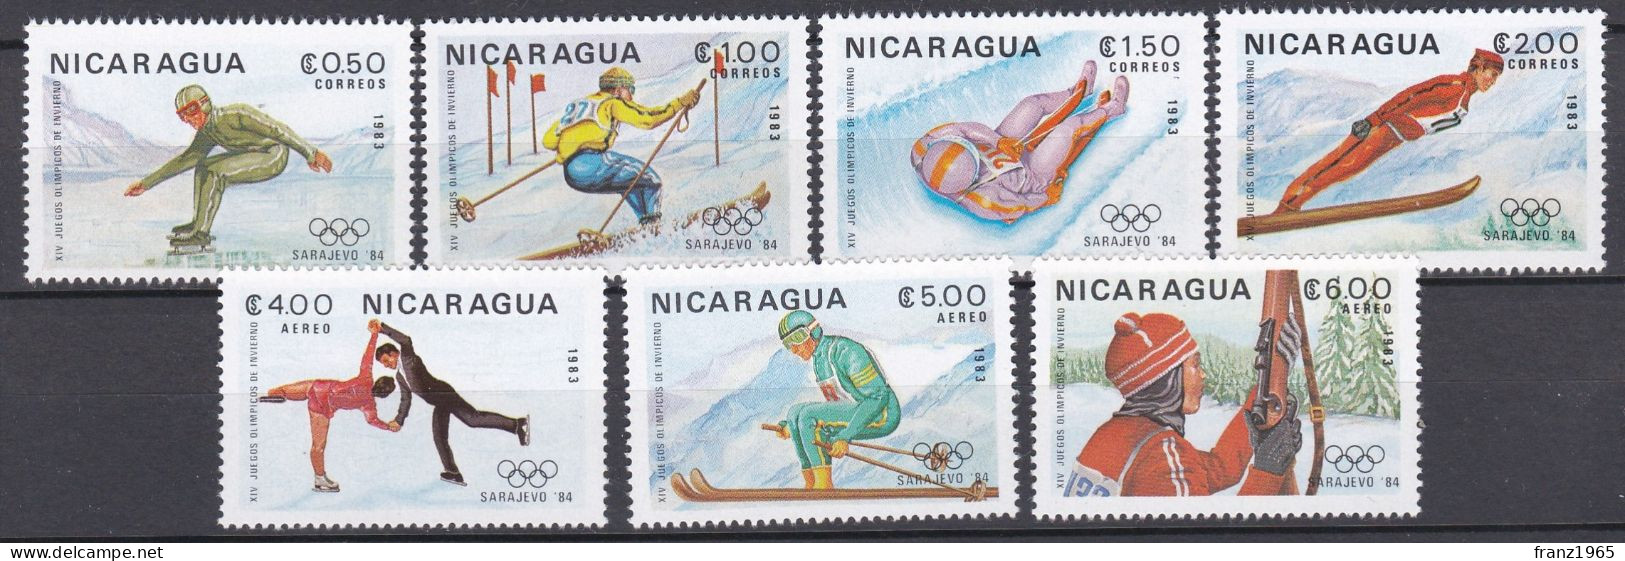 Nicaragua - Olympics Games 1984 - Inverno1984: Sarajevo